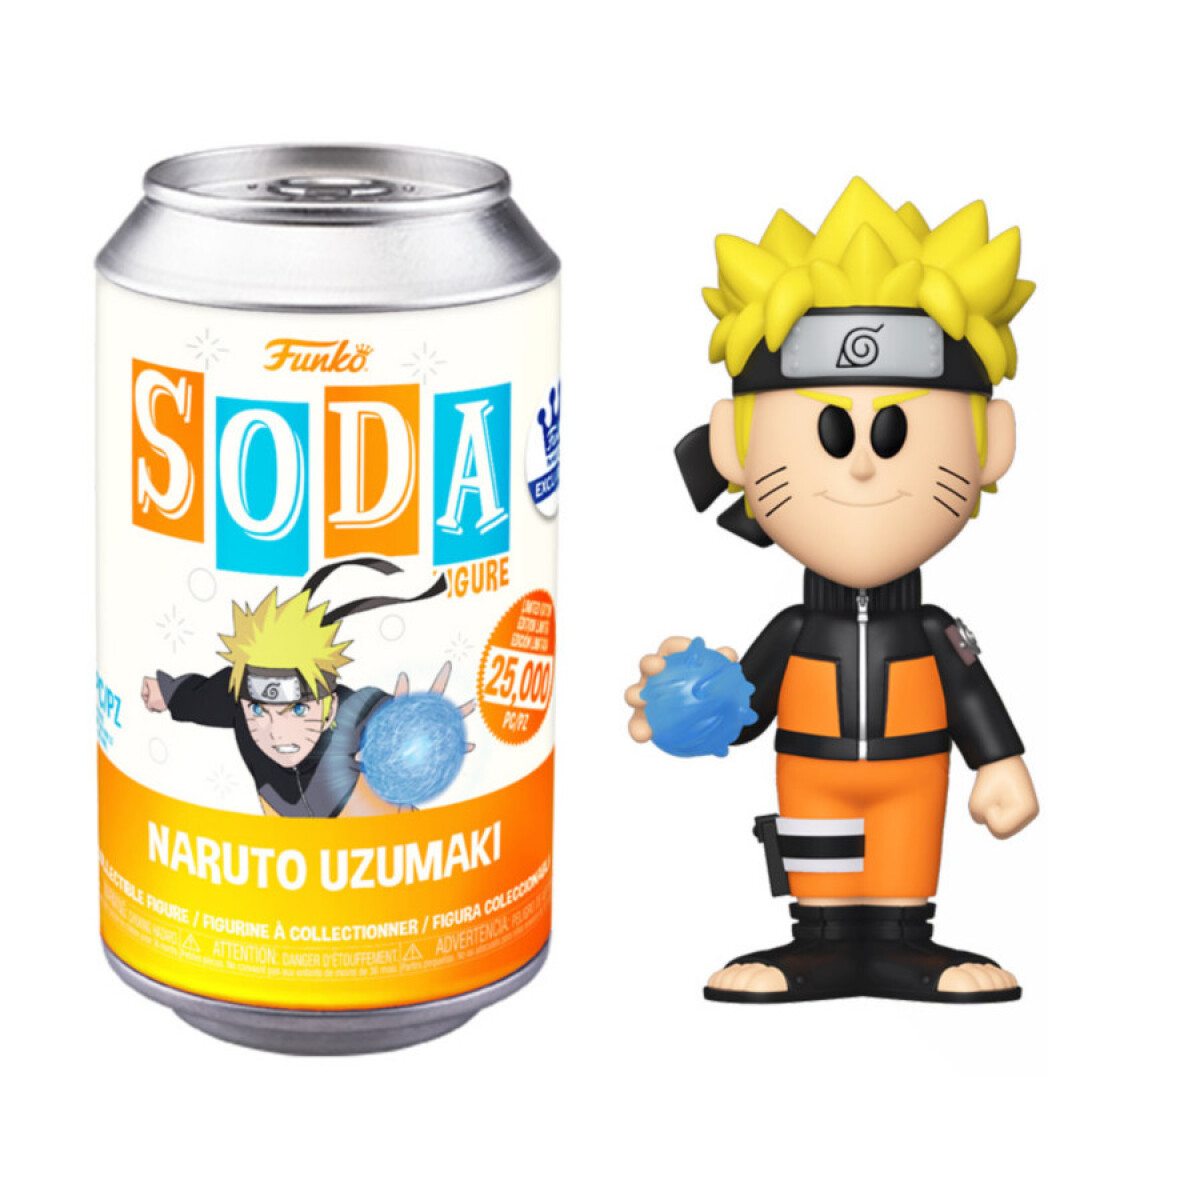 Naruto Rasengan · Naruto Shippuden· Funko Soda Vynl 